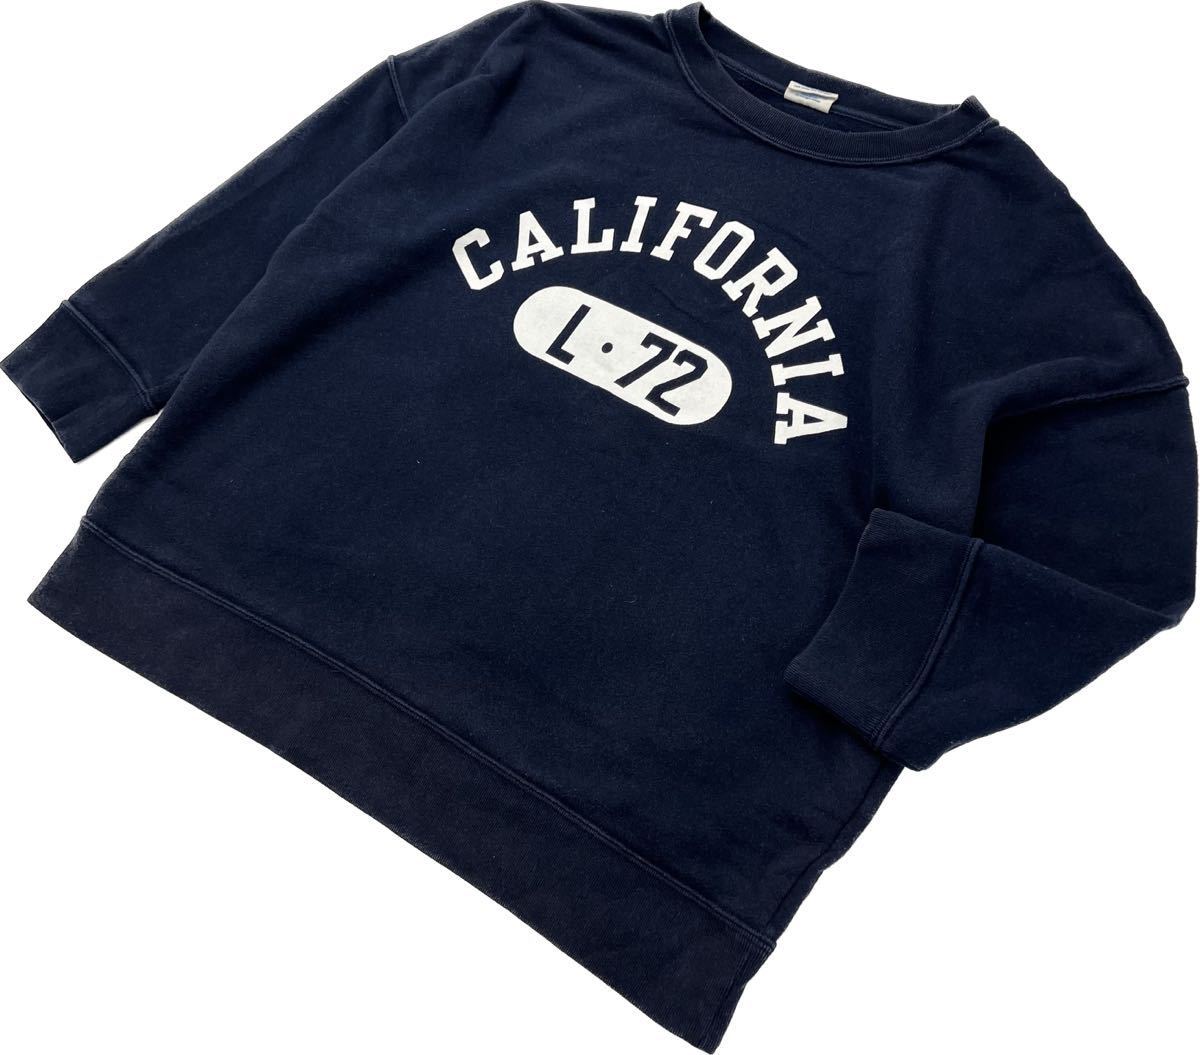 Champion * California 7 минут длина дизайн тренировочный тонкий футболка темно-синий L American Casual женщина Street популярный Champion #S1806